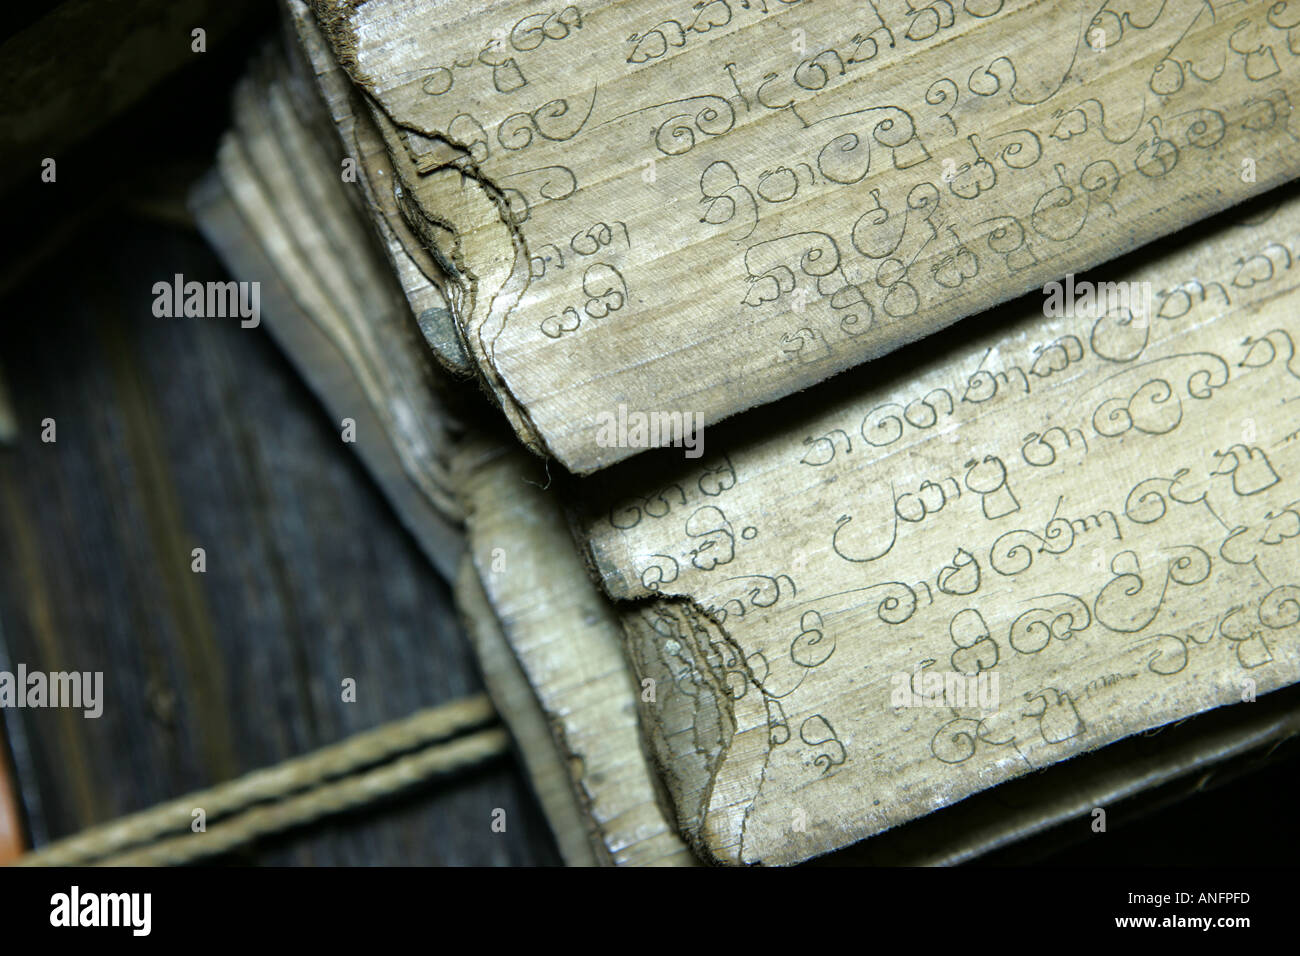 LKA, Sri Lanka : vieux scripts sur palmleave, vélin, papier parchemin, avec traditionel recettes ayurvédiques Banque D'Images